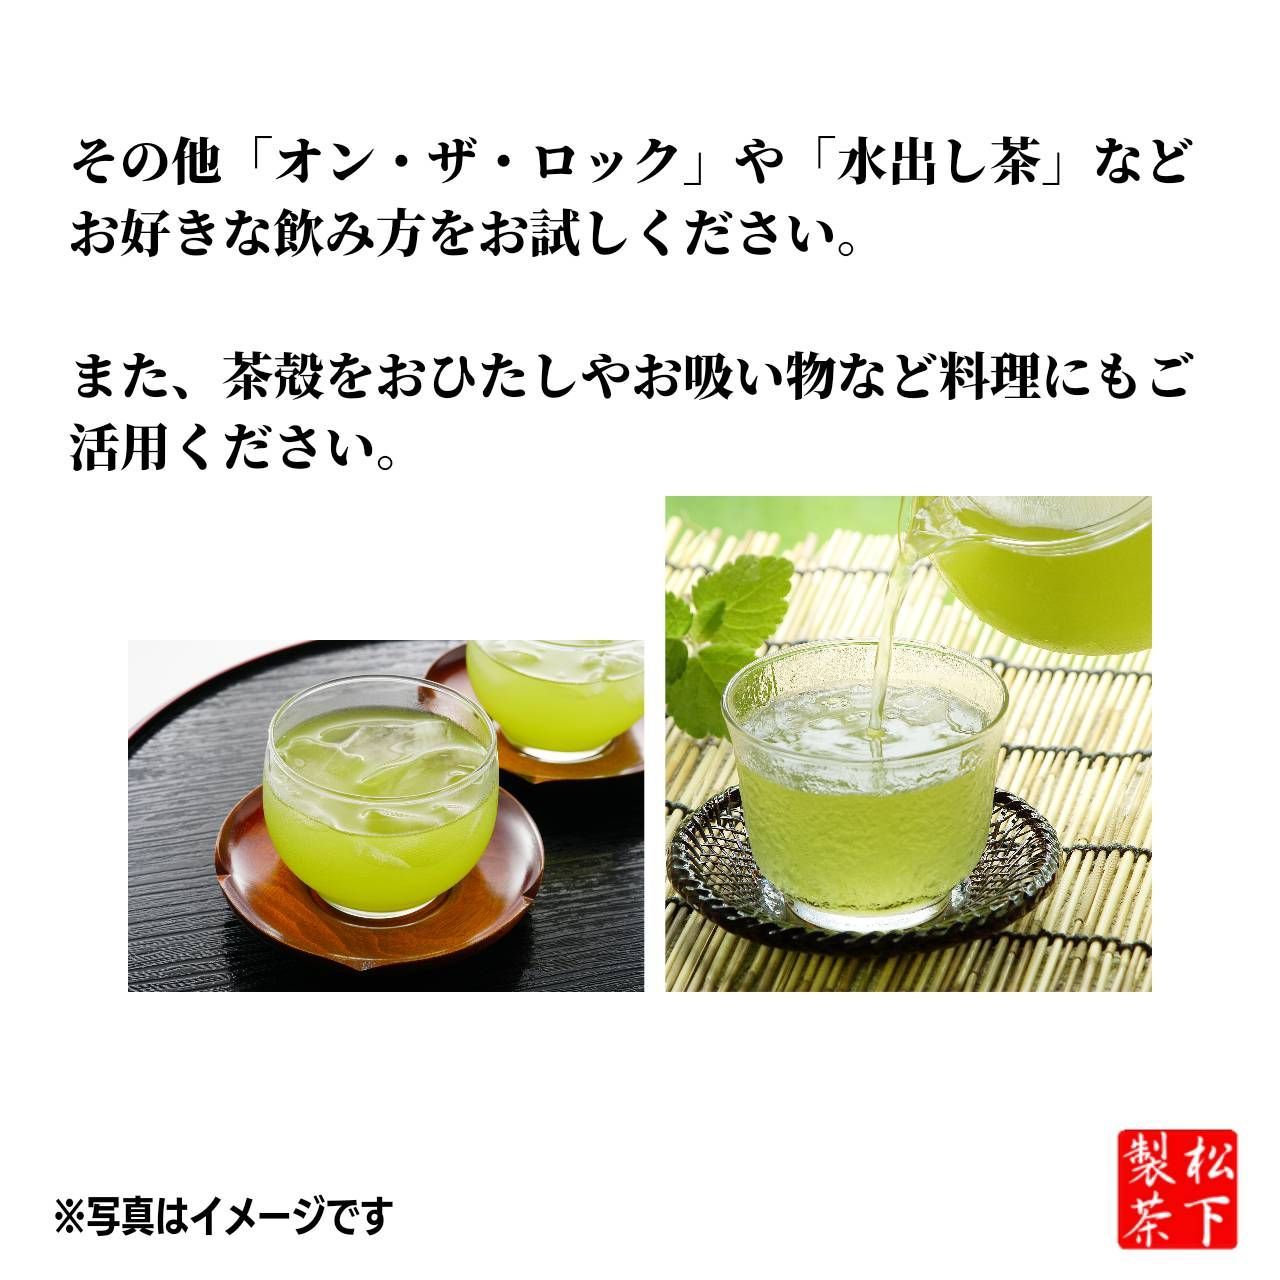 【2022年産/希少品種】種子島の有機緑茶『くりたわせ』 茶葉 100g-8